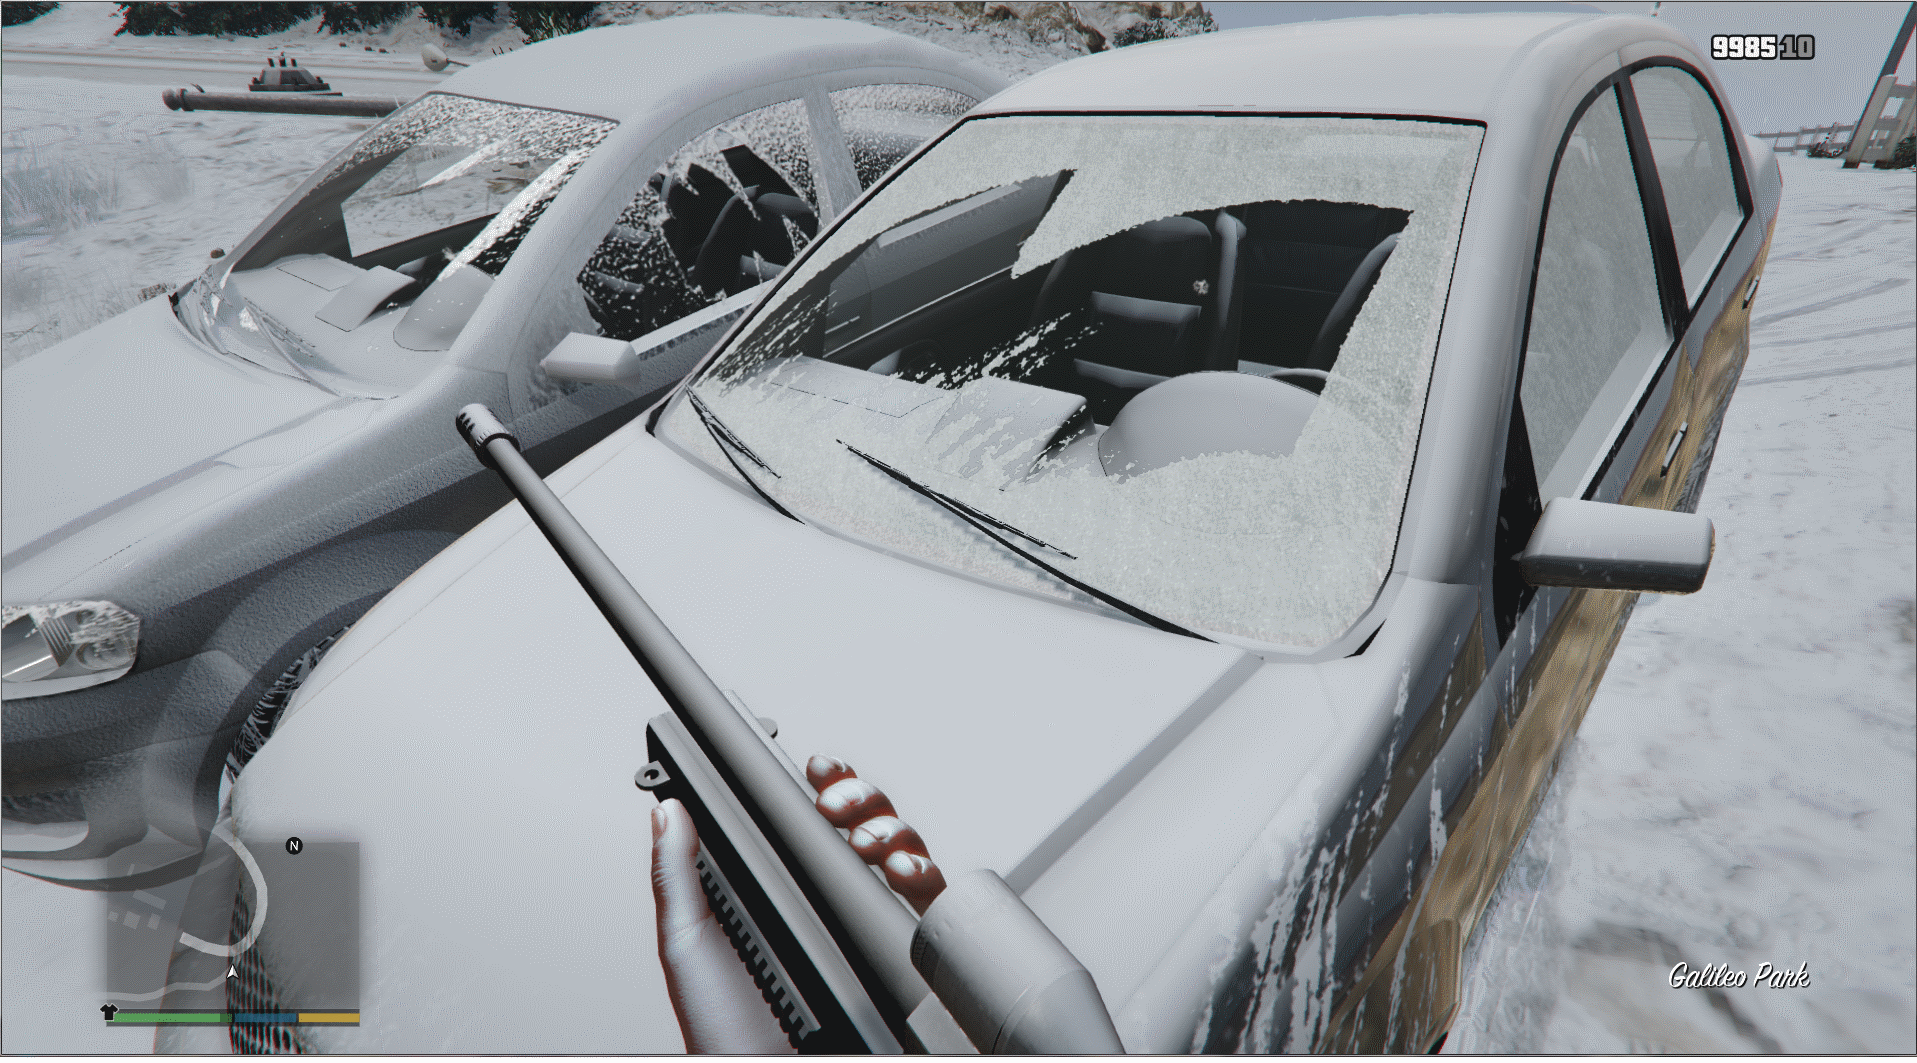 GTA V Online Snow Mod for GTA 5